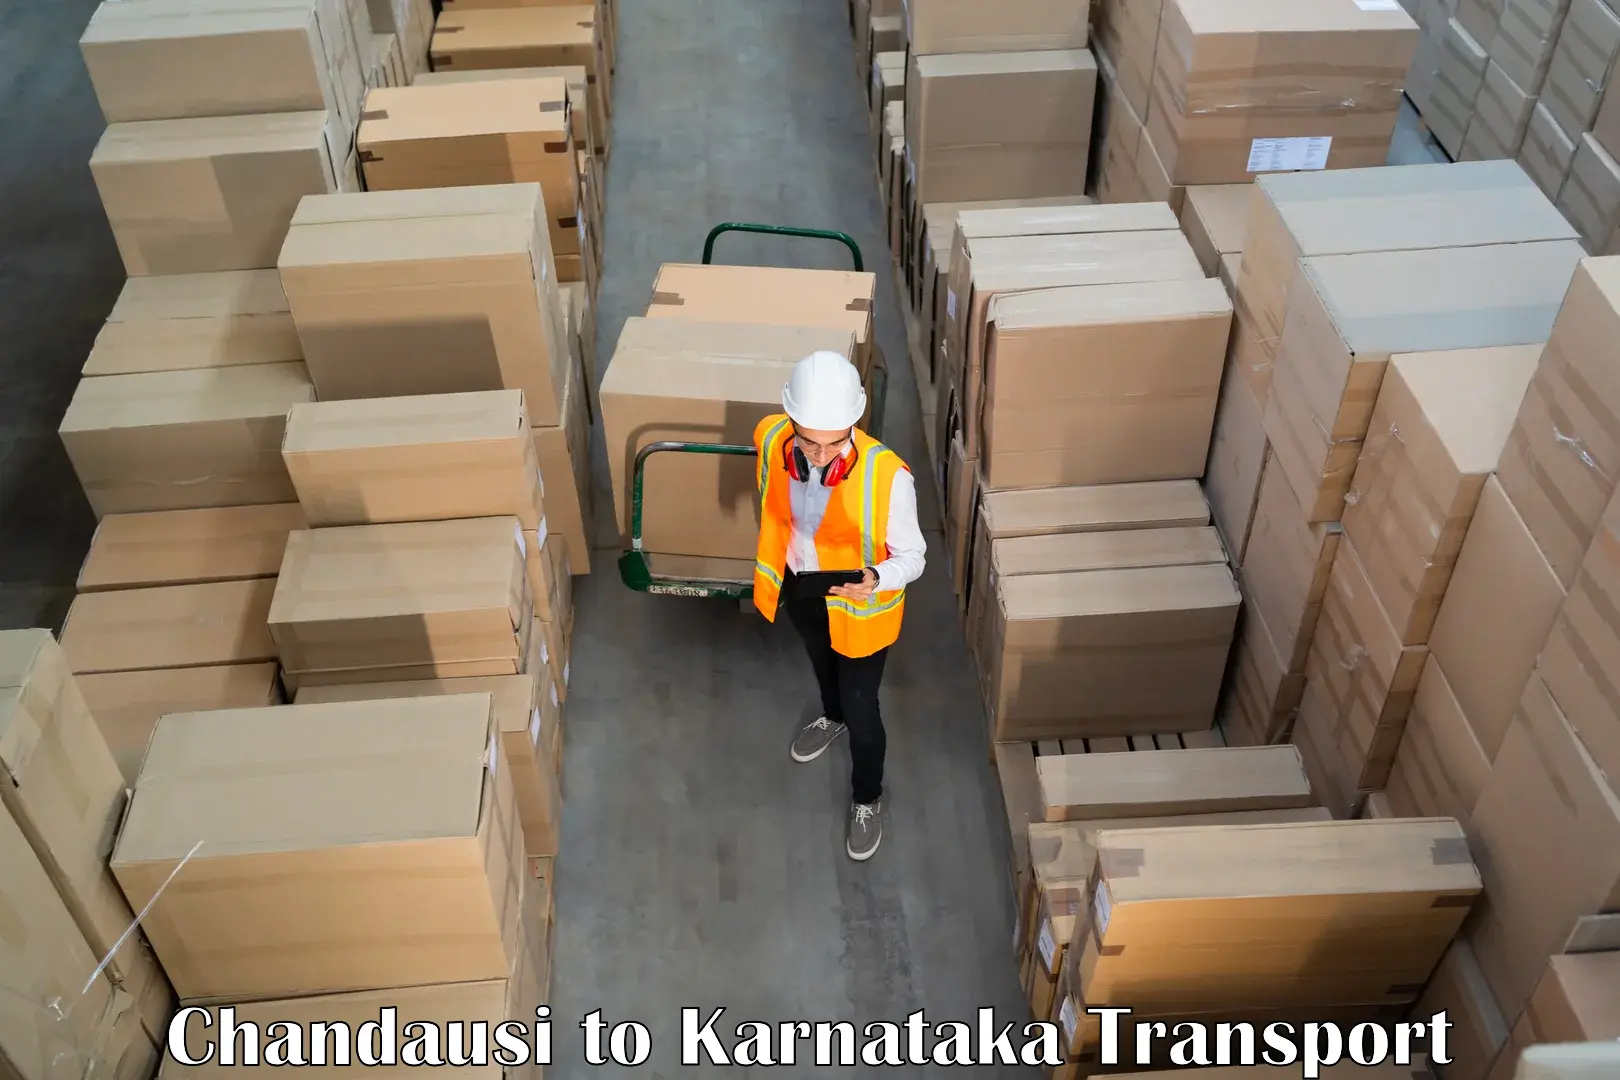 Luggage transport services Chandausi to Karnataka